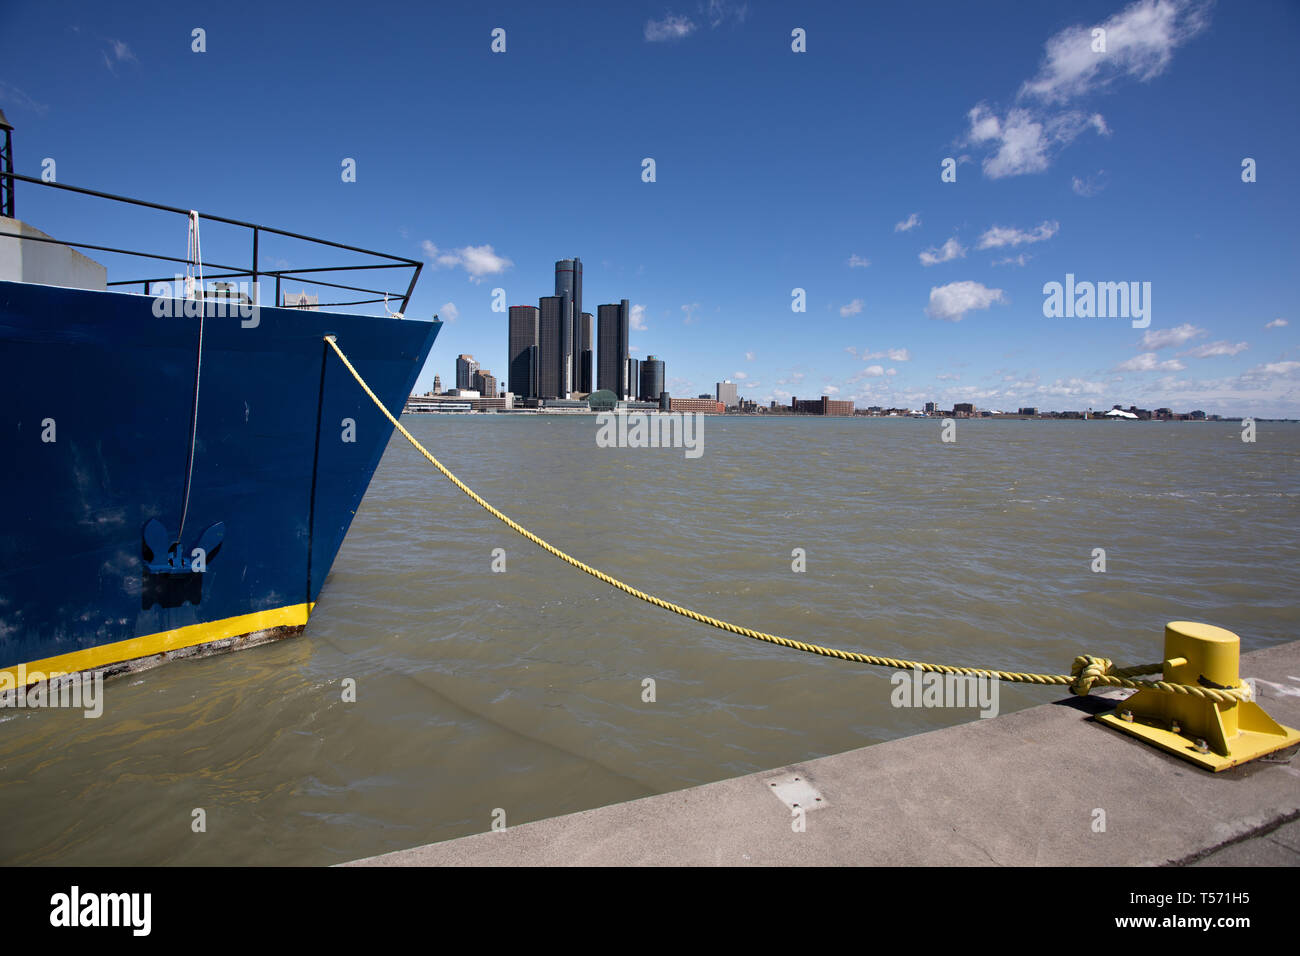 Aprile 15 2019 Windsor Ontario Canada Fiume in Barca Nave da Crociera sul Fiume Detroit ormeggiati Foto Stock